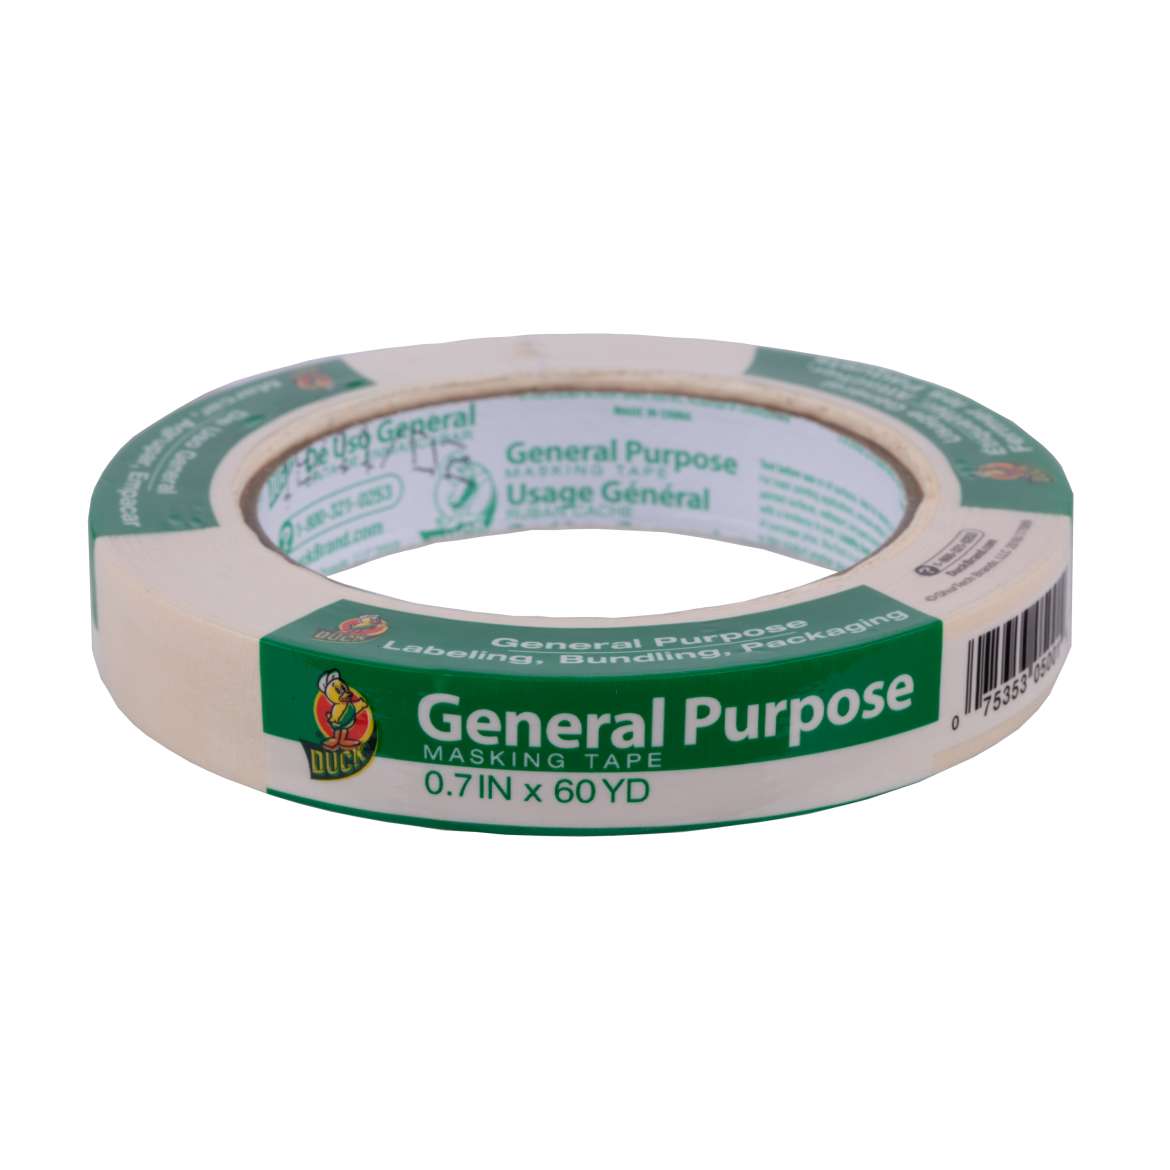 General Purpose Masking Tape Image